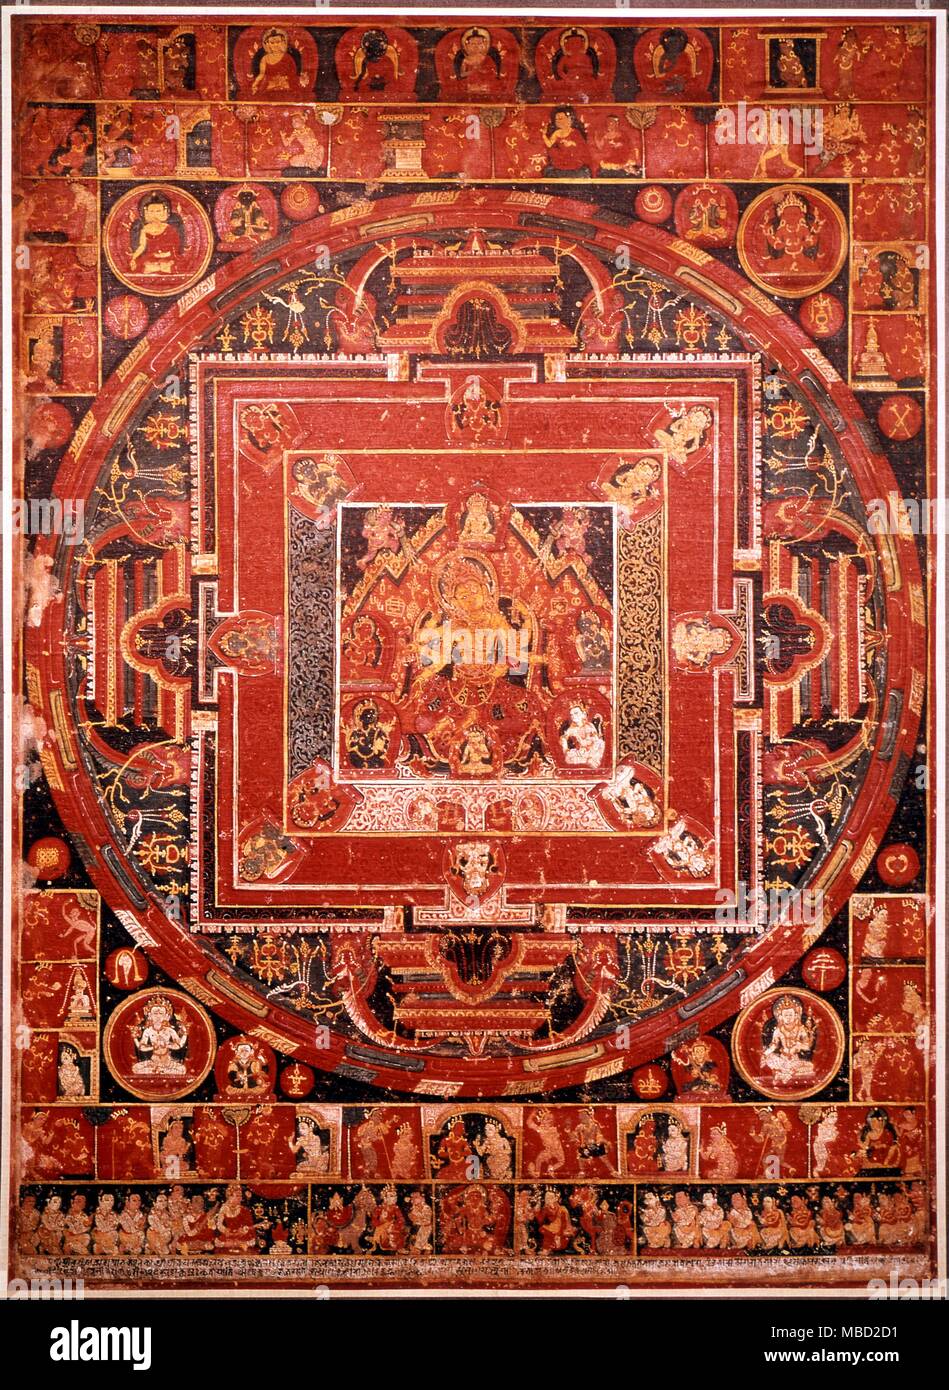 Mandala nepalí de origen tibetano. Tanka describiendo la naturaleza del mundo espiritual. En el Museo Británico. Foto de stock